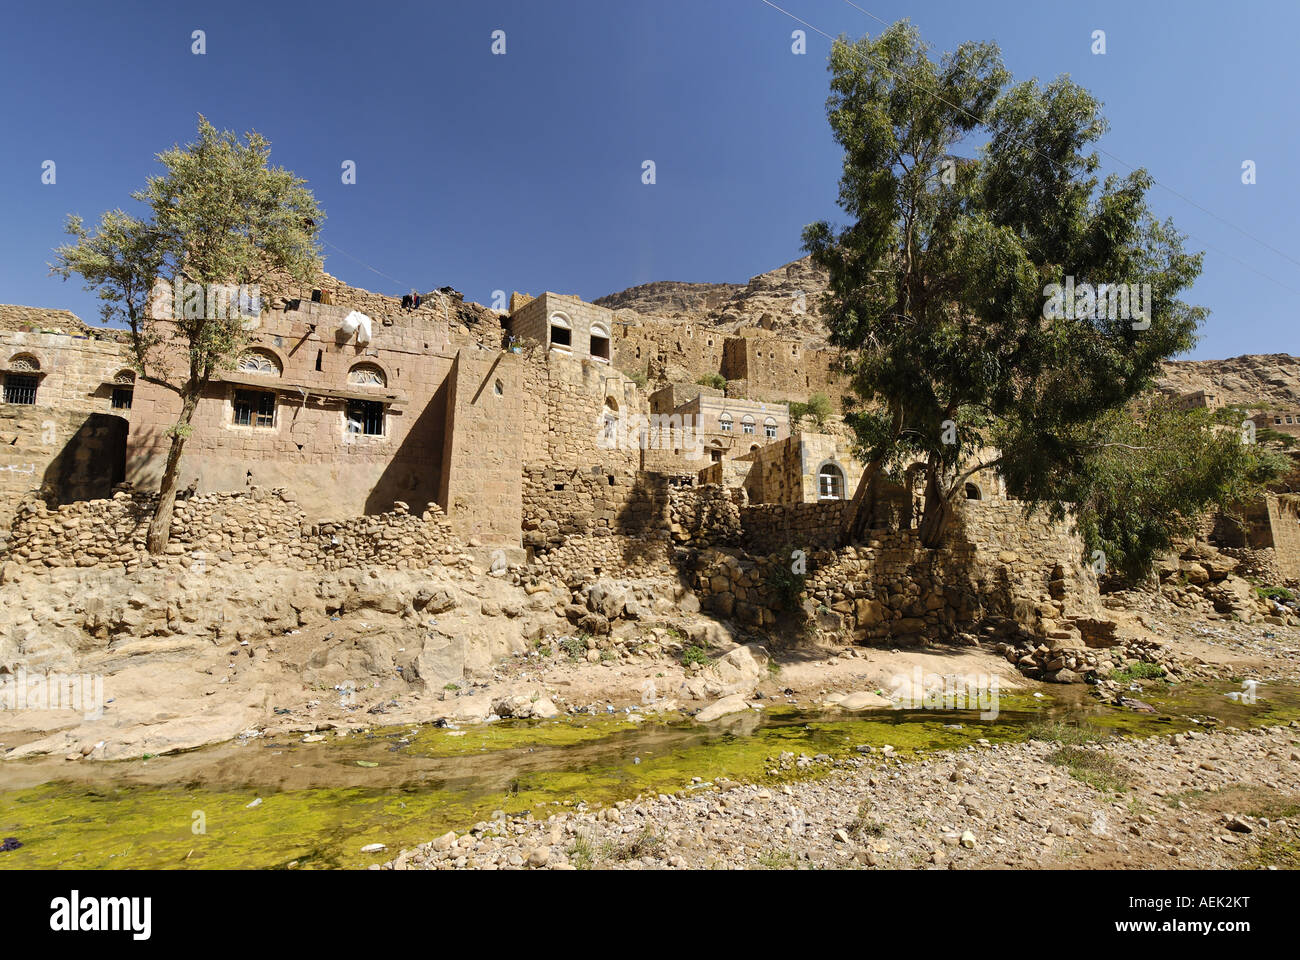 Mountain village, jemenian highland, Yemen Stock Photo